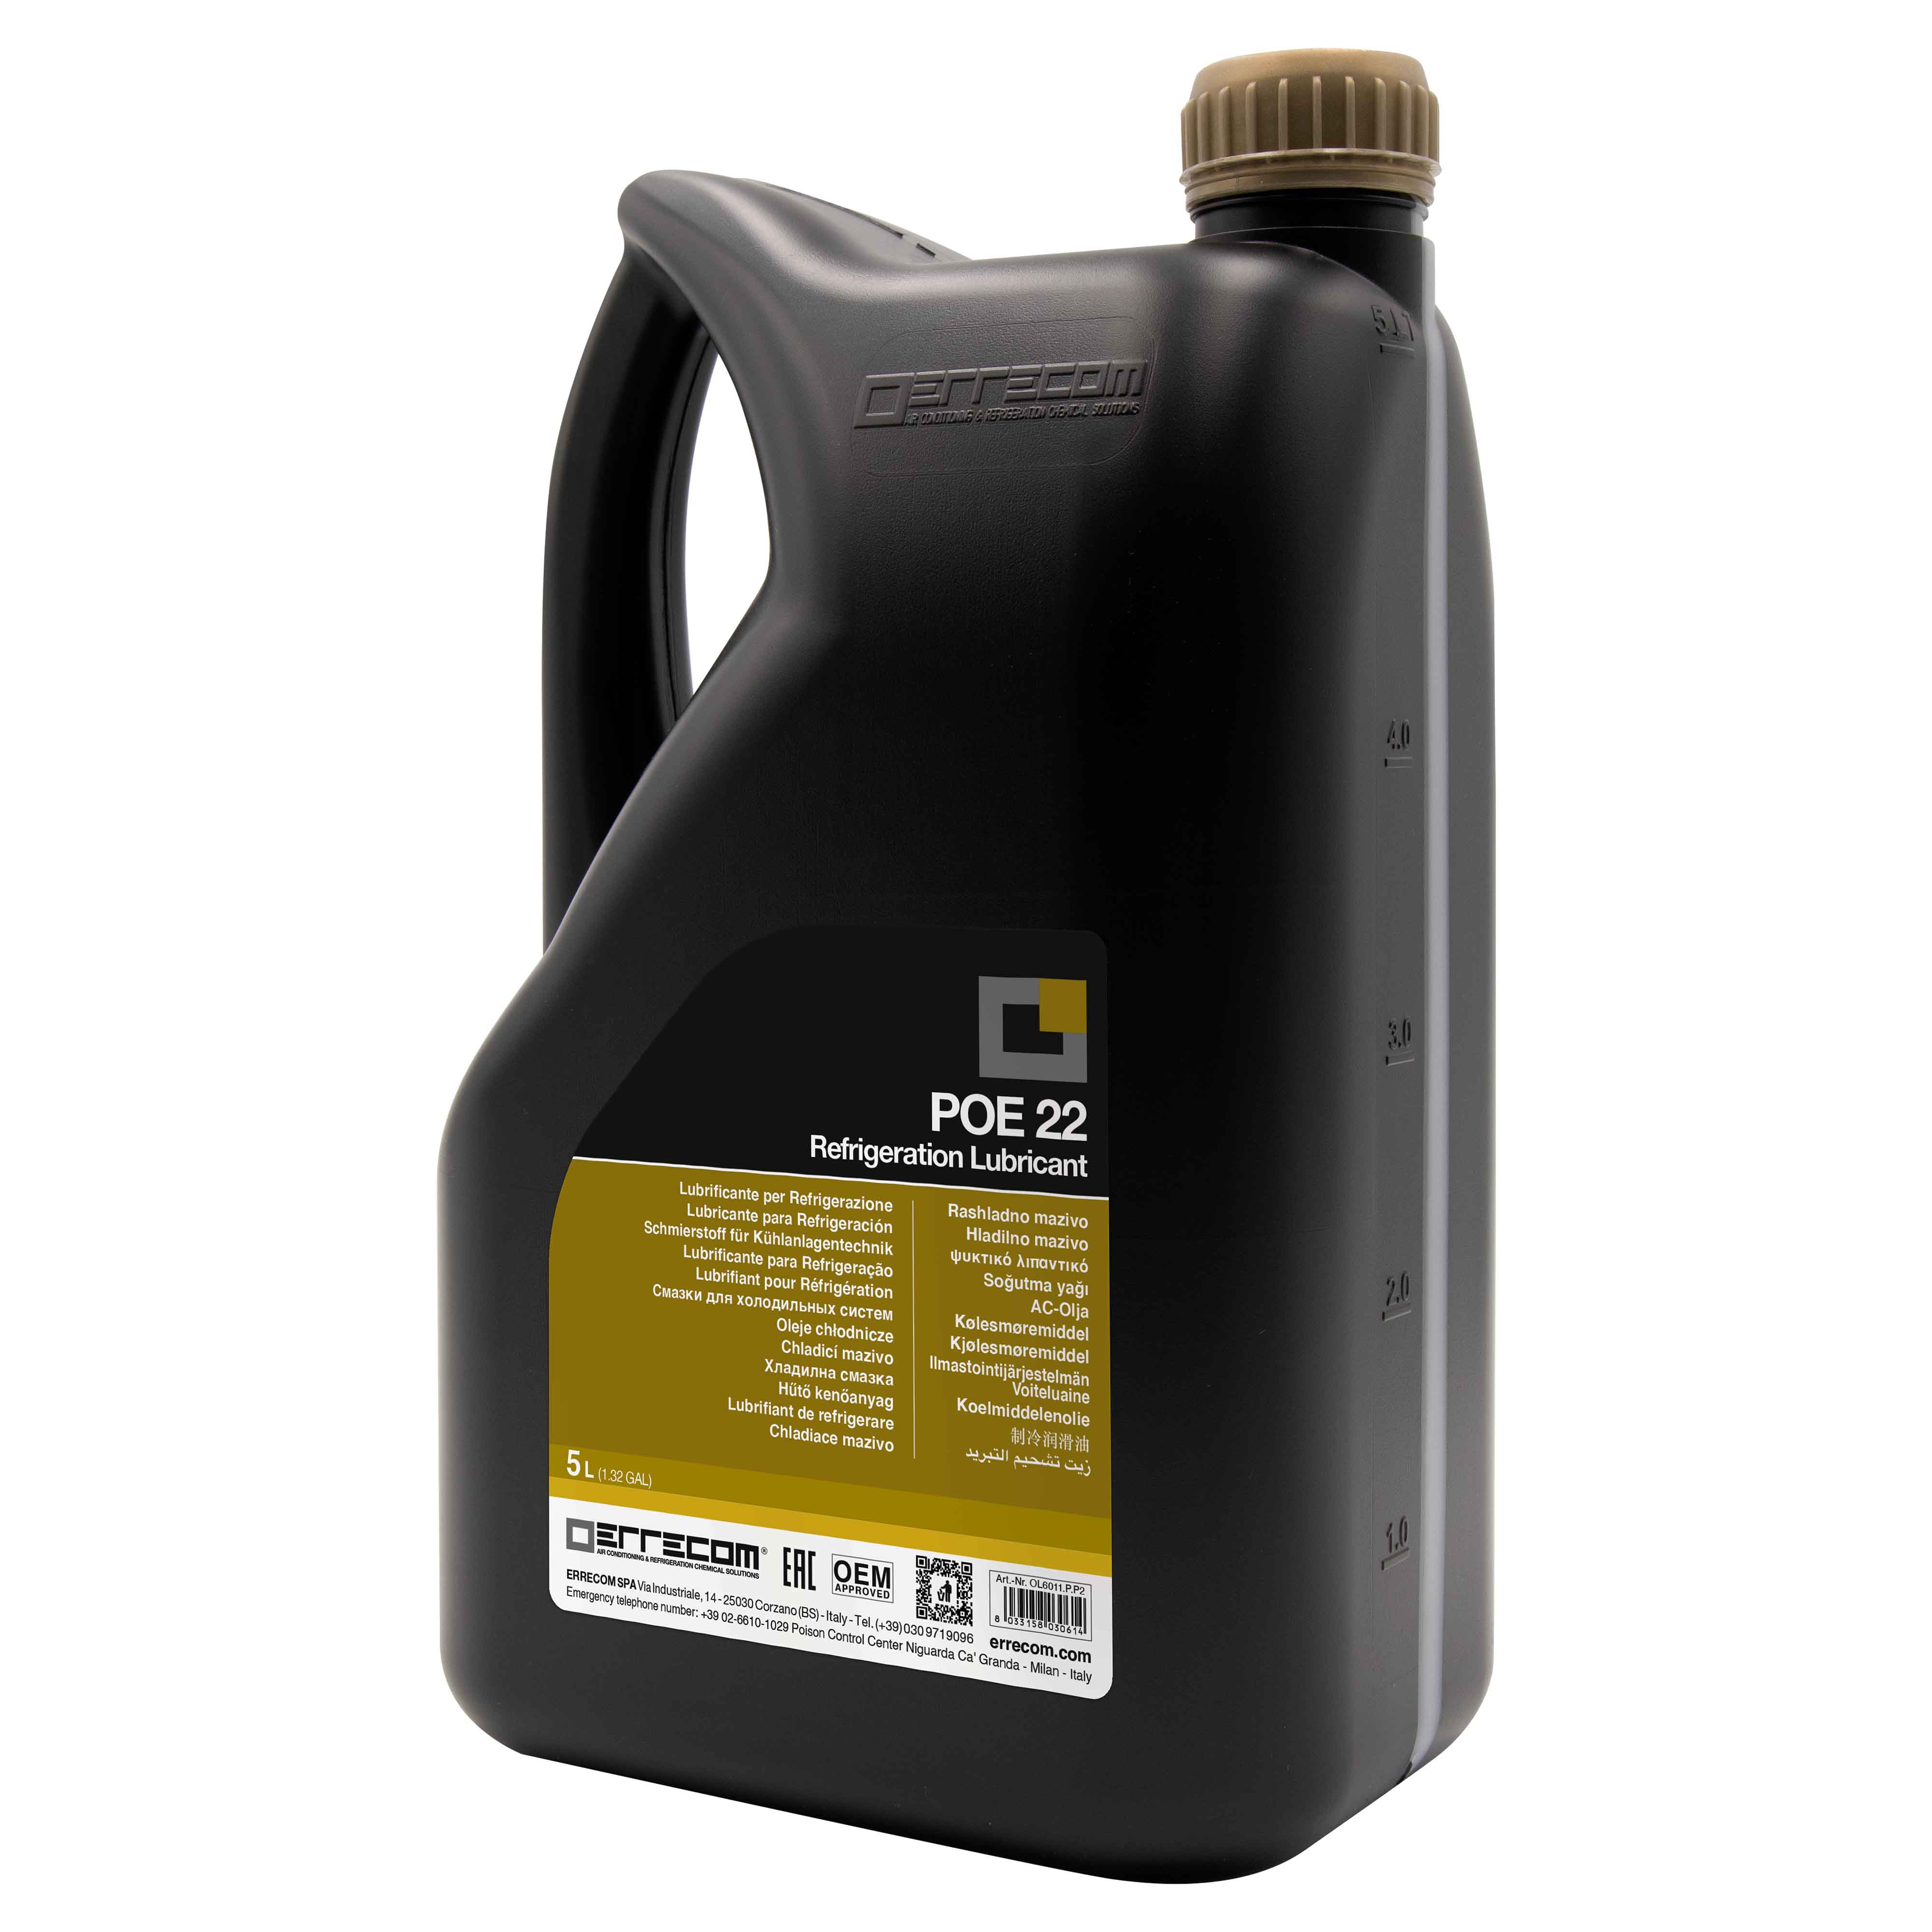 2 x Olio lubrificante R&AC Polyol Estere (POE) Errecom 22 - Tanica in Plastica da 5 lt. - Confezione n° 2 pz. (totale 10 litri)